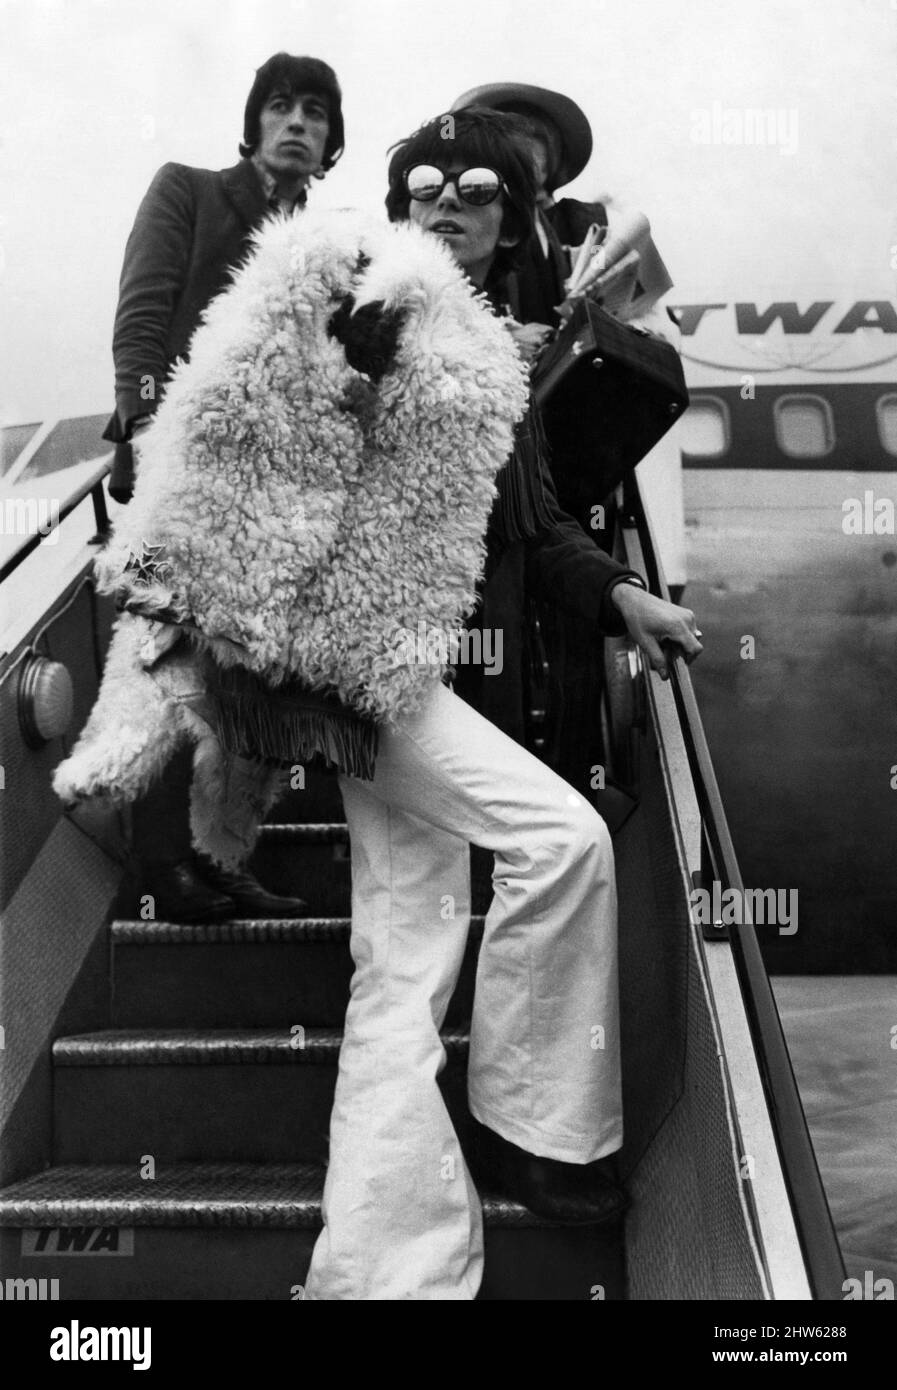 Die Rolling Stones verließen den Flughafen Heathrow, London, und reisten am Donnerstag, dem 12. Januar 1967, nach New York, um auf der Ed Sullivan-Show zu erscheinen. Keith Richards und Bill Wyman im Vollausblick Stockfoto